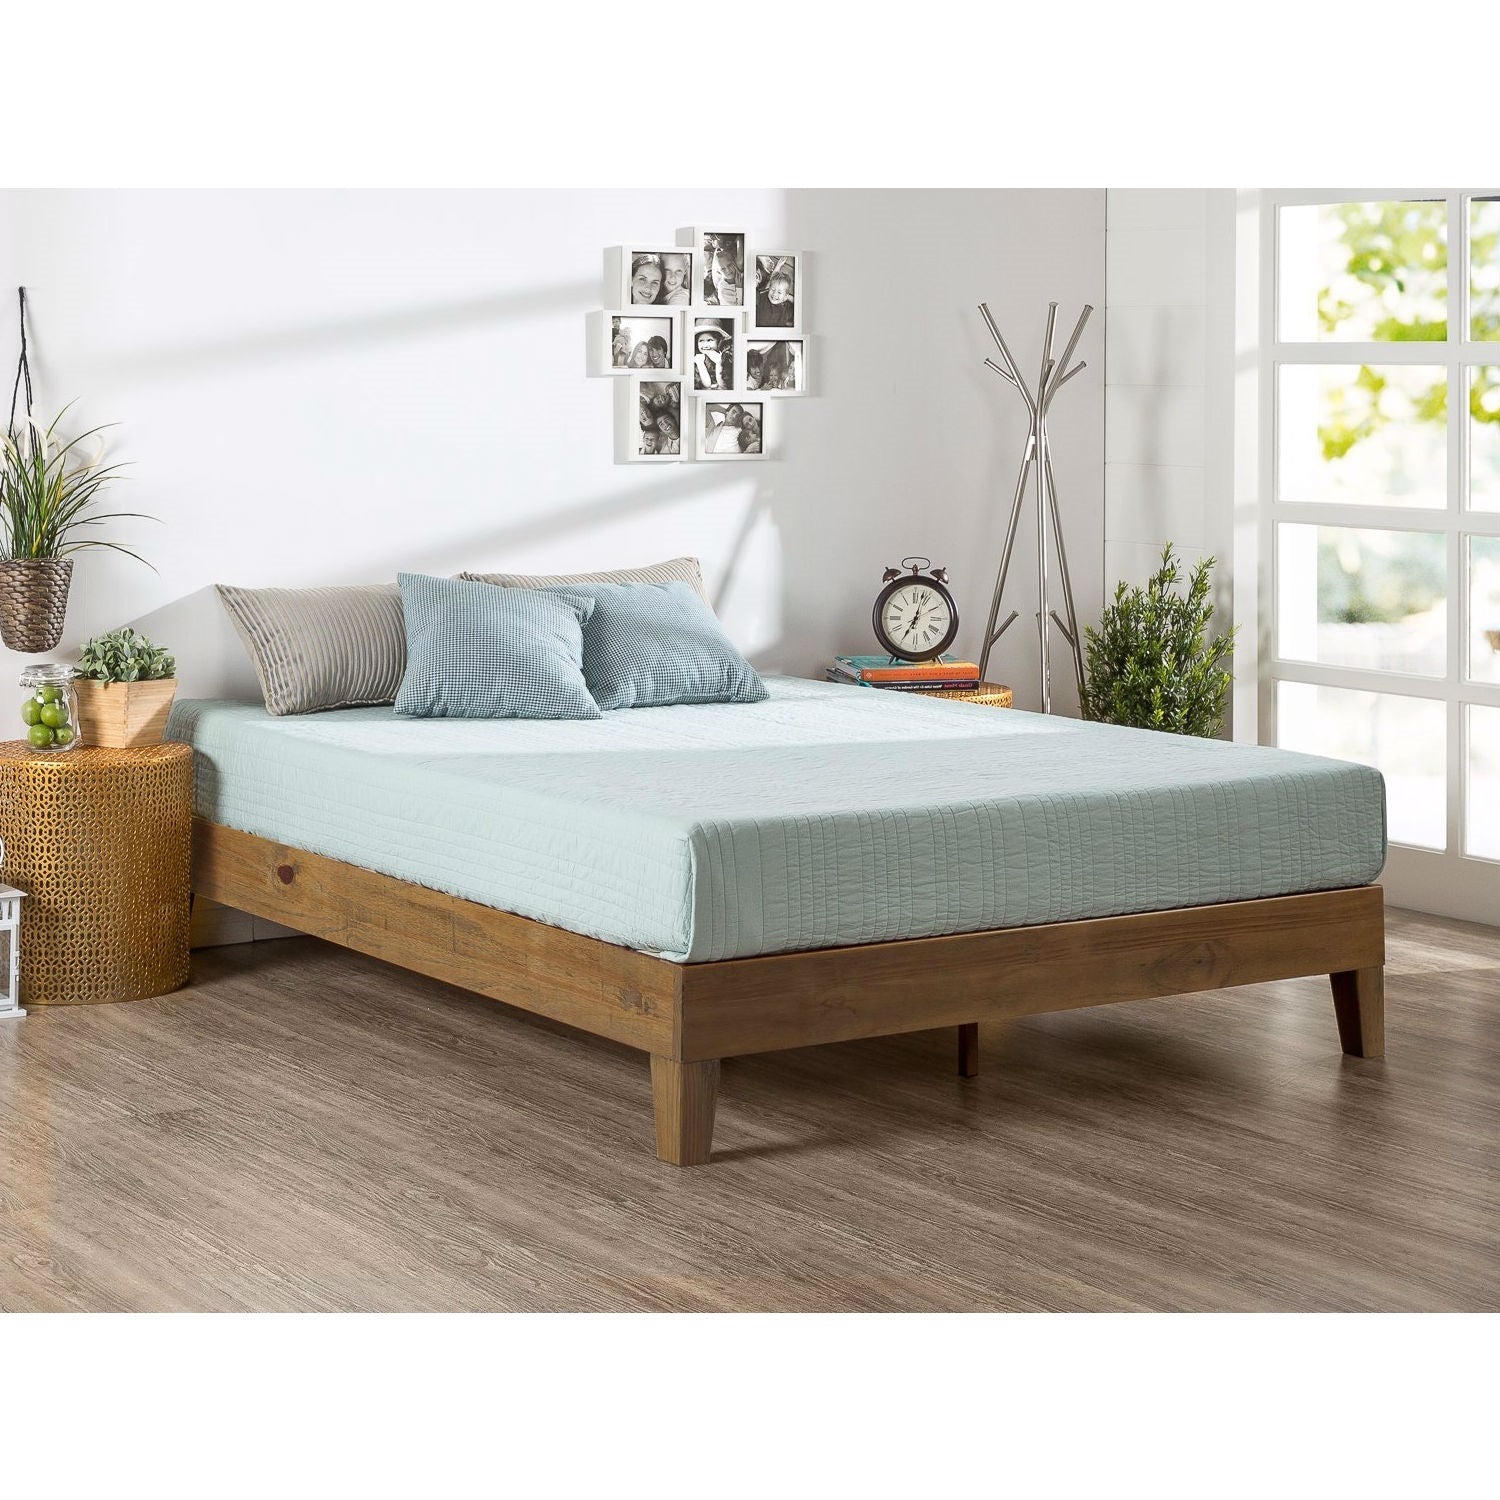 Bedroom > Bed Frames > Platform Beds - Twin Size Solid Wood Platform Bed Frame In Pine Finish